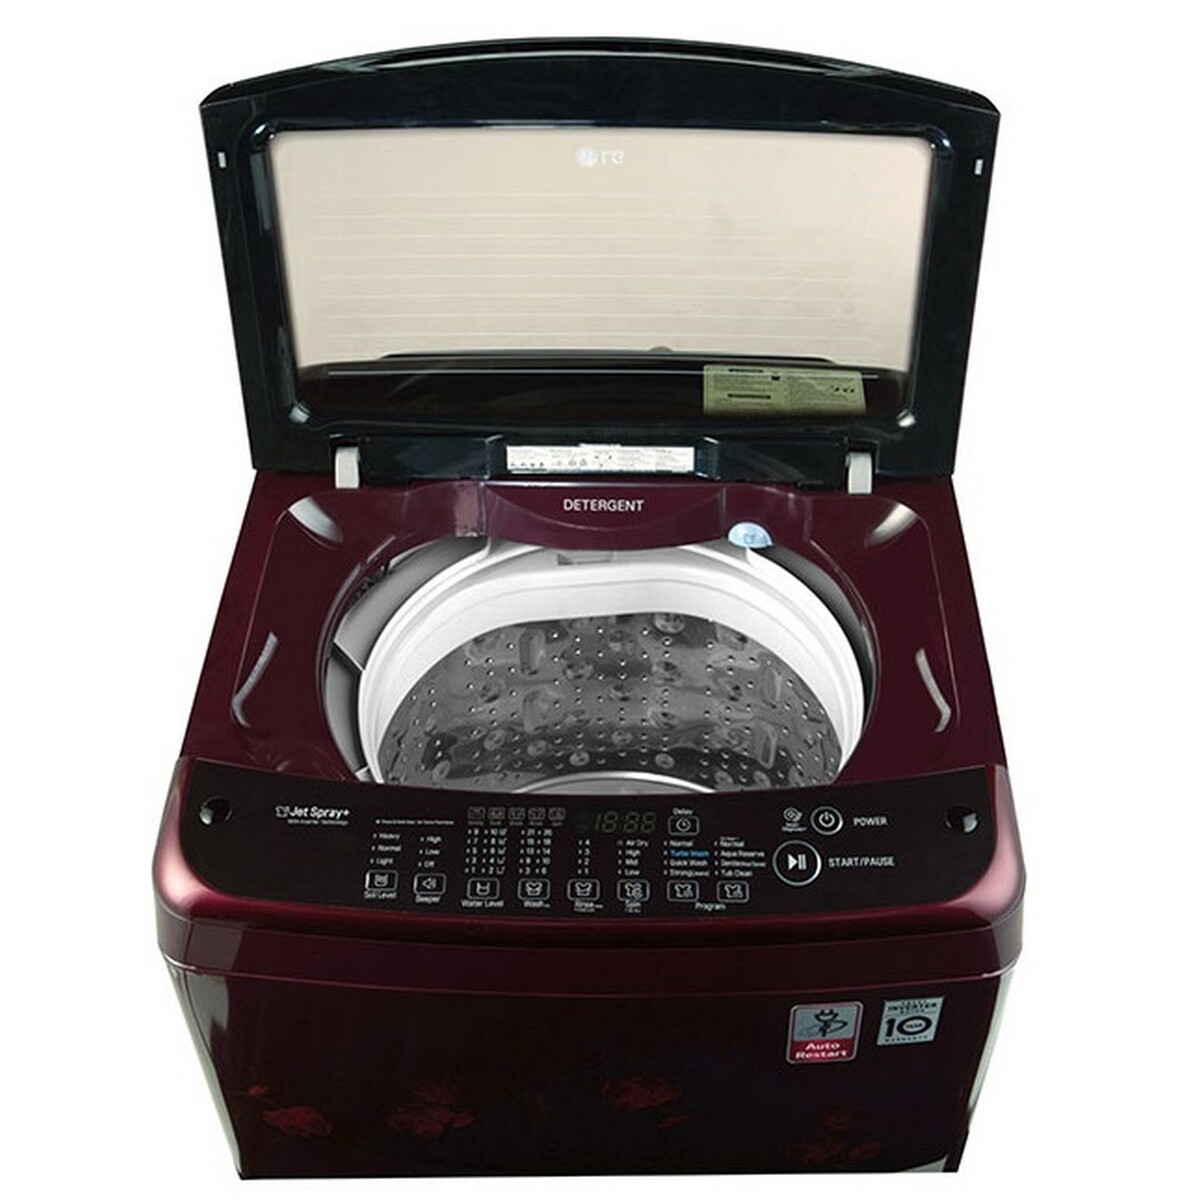 LG Fully Automatic Washing Machine T8077NEDL8 7kg